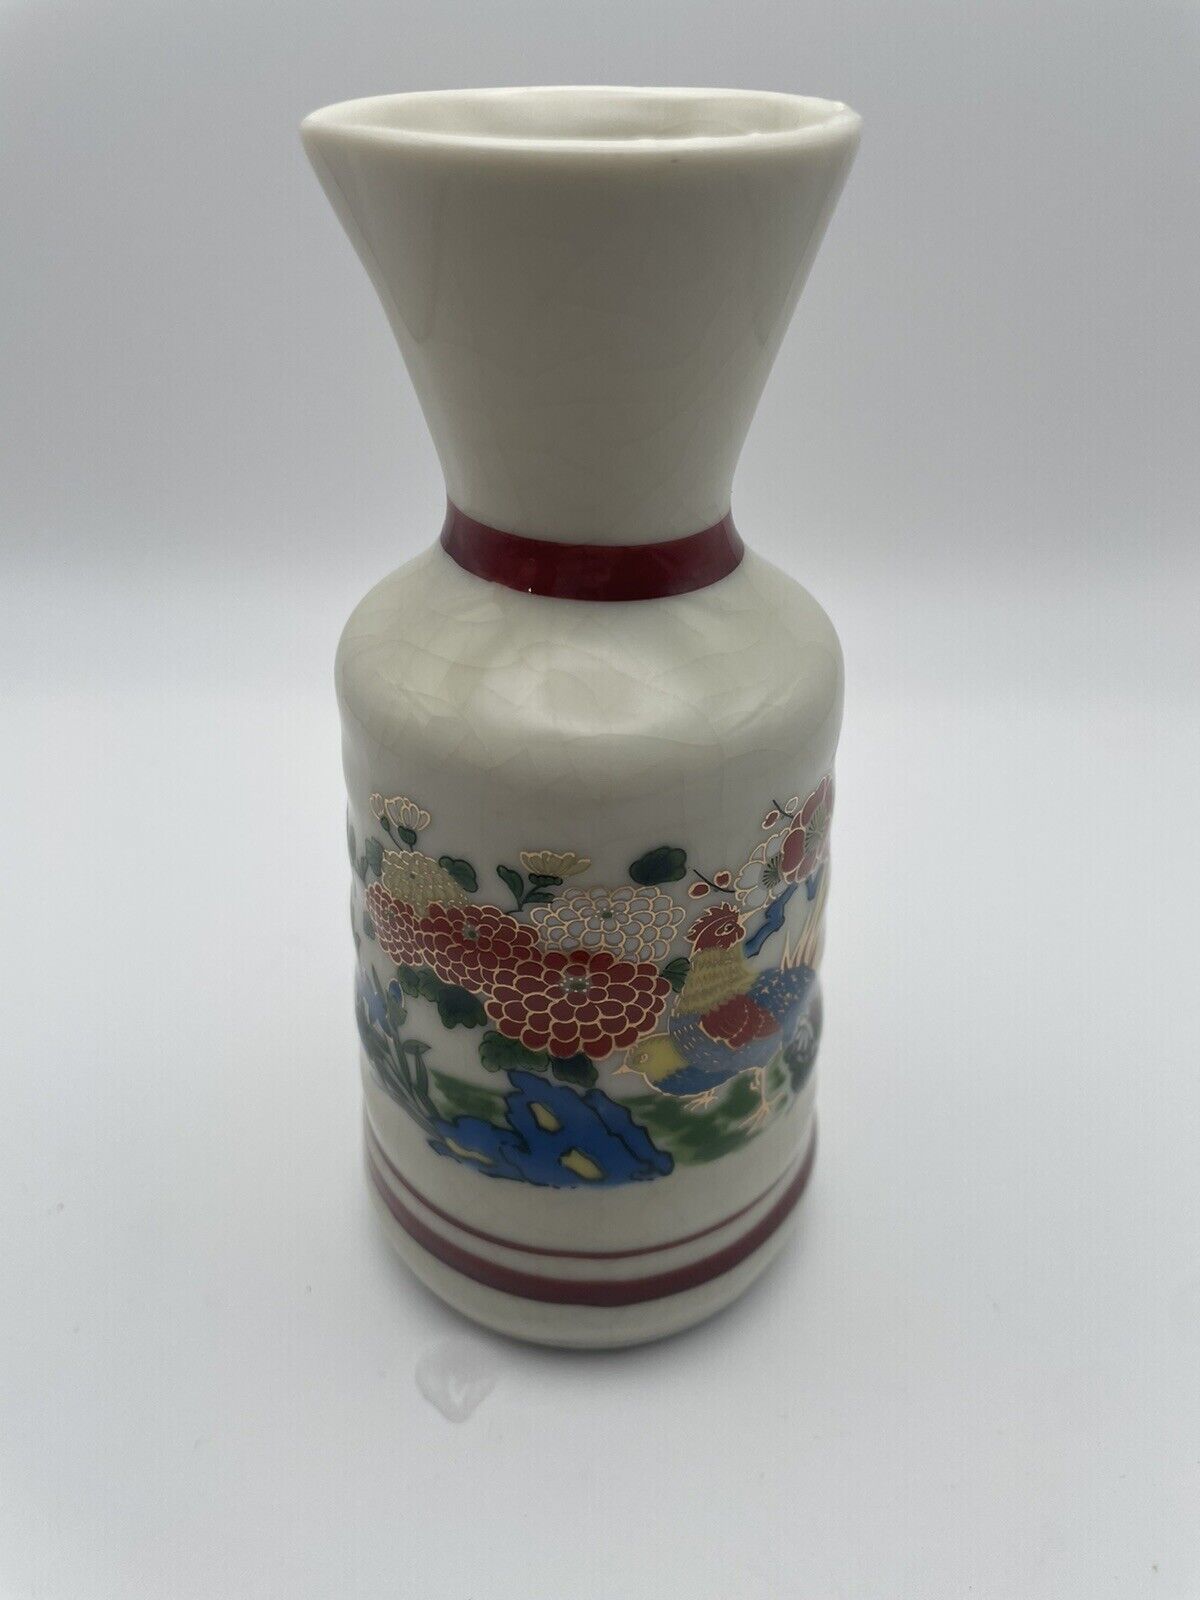 OMC Japanese Porcelain Sake Bottle Floral Pattern Vintage